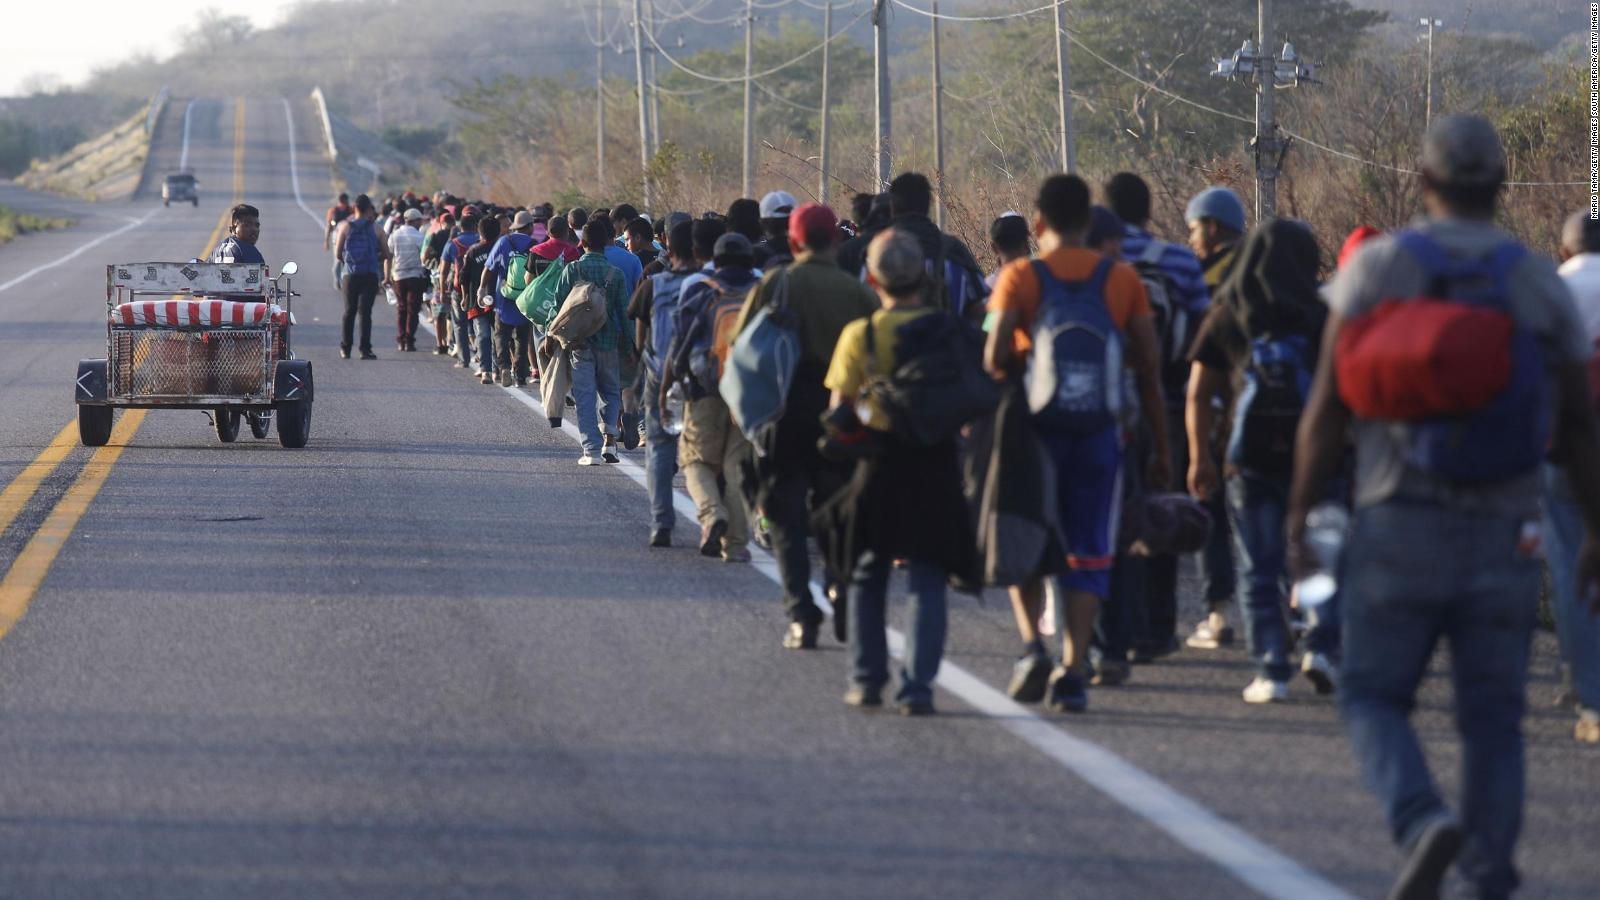 La primera de ellas, es la “Migrant Protection Protocols” (MPP) en donde se faculta al “Departamet of Homeland Security” a regresar a los migrantes irregulares y solicitantes de asilo procedentes de Centroamérica que ingresen a ese país vía terrestre para que permanezcan en México hasta en tanto se resuelven sus procedimientos de asilo.